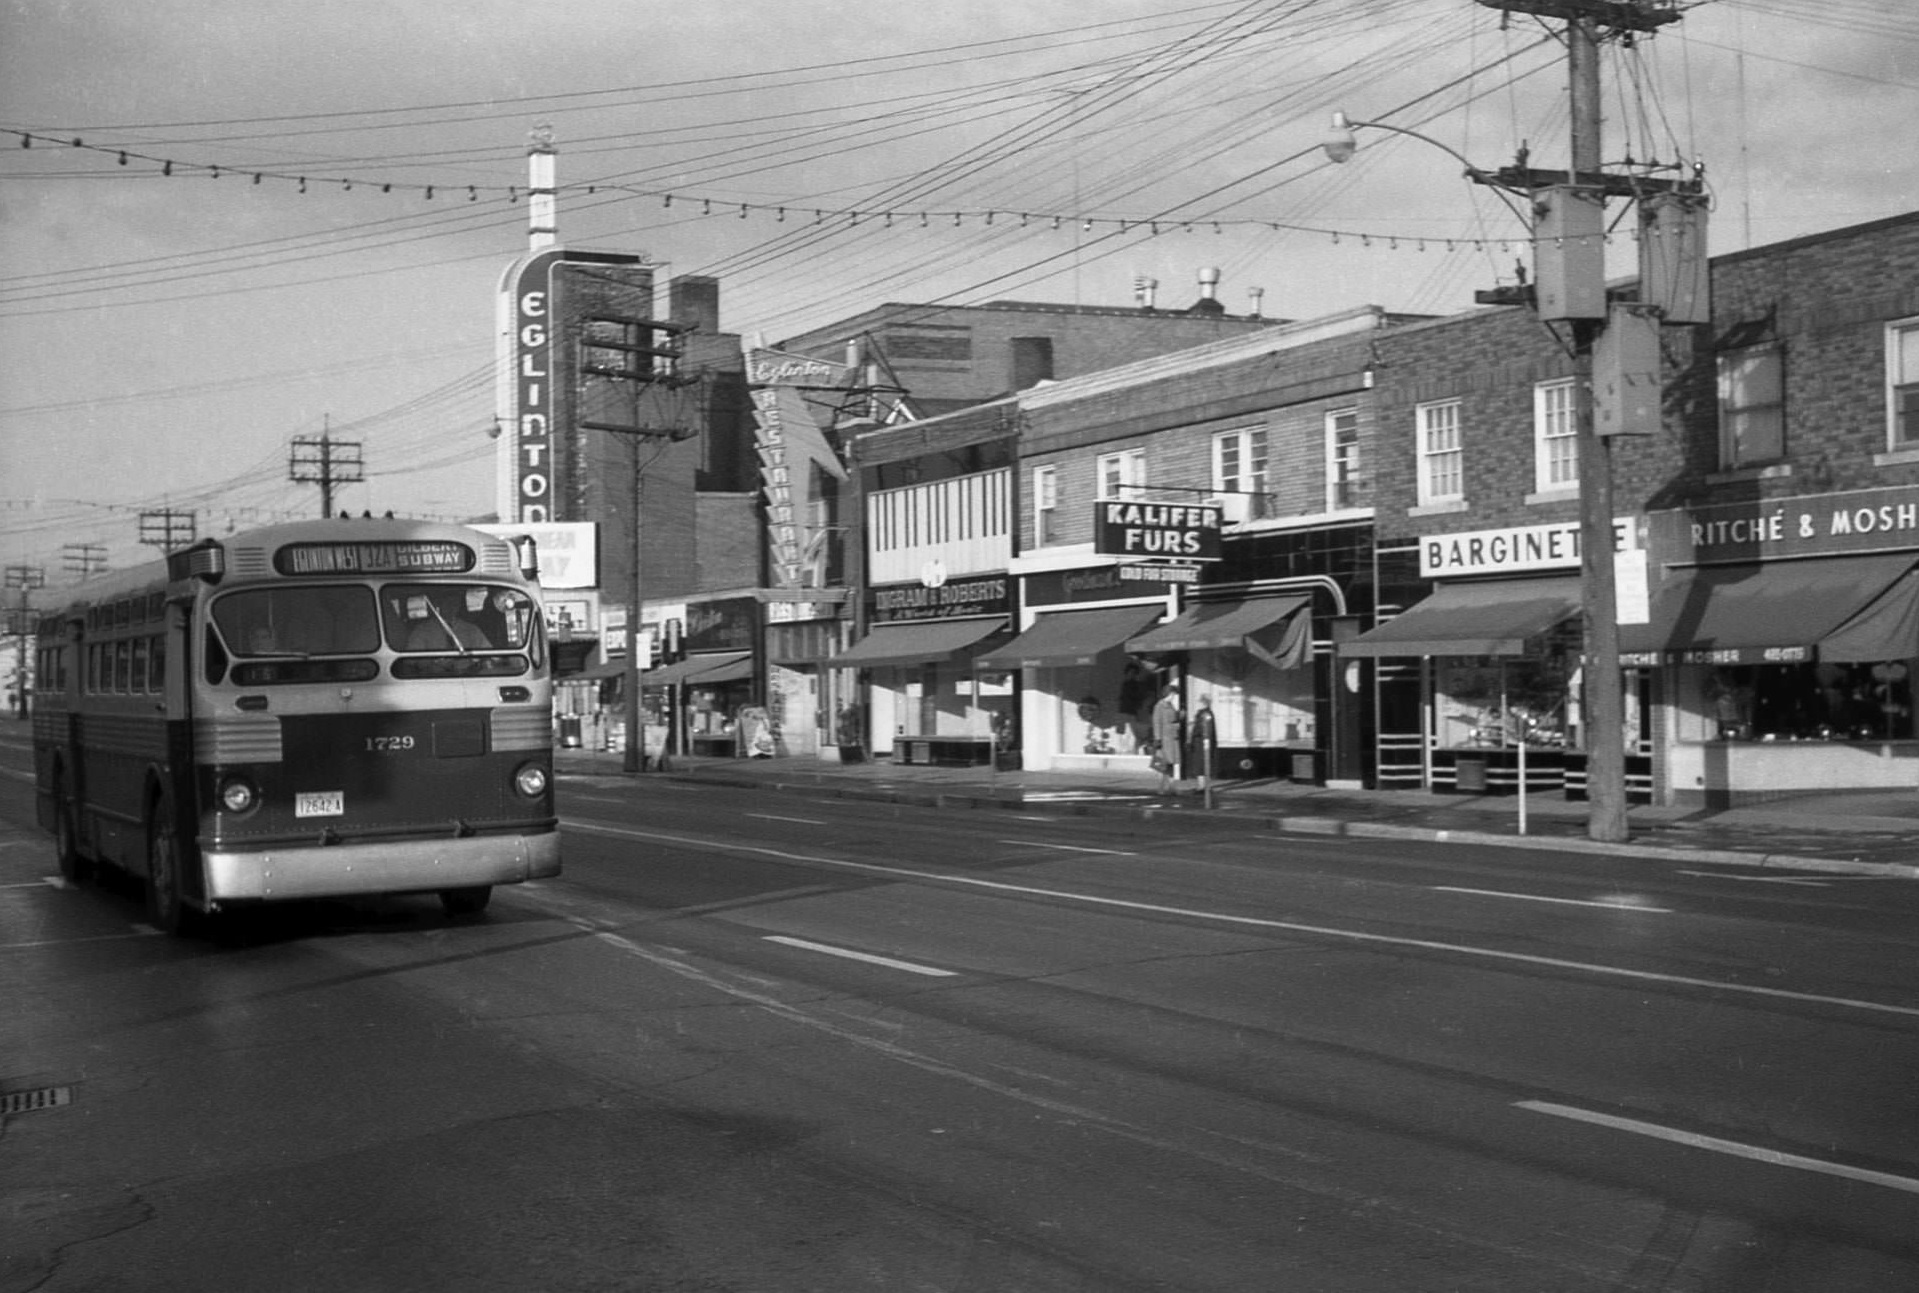 TTC bus 1729 heading east along Eglinton Avenue West in 1964, approaching Avenue Road.